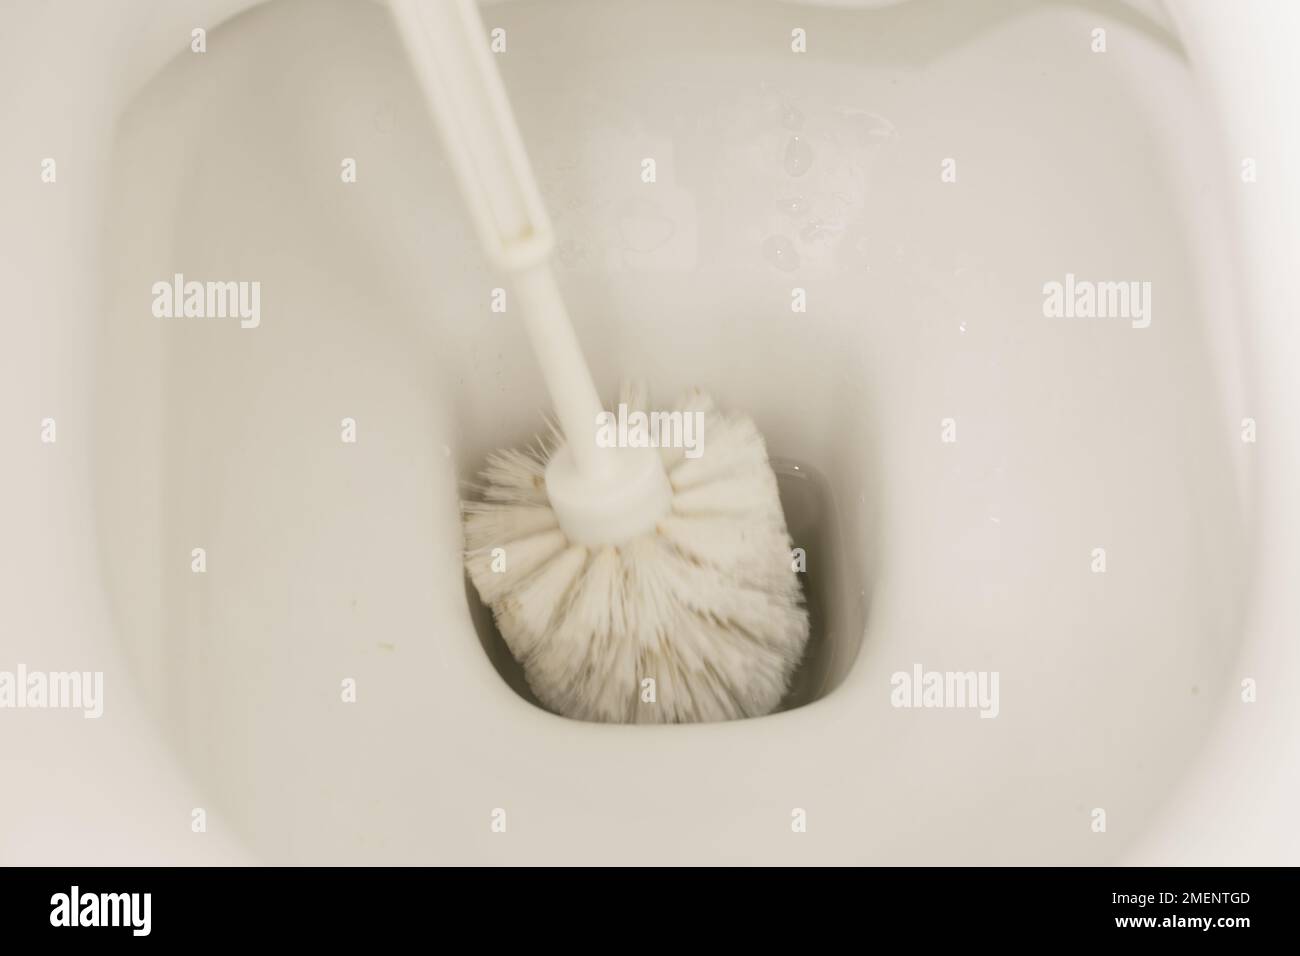 un bol de toilette blanc soigneusement nettoyé frotté à la main gantée à l'aide d'une petite brosse Banque D'Images